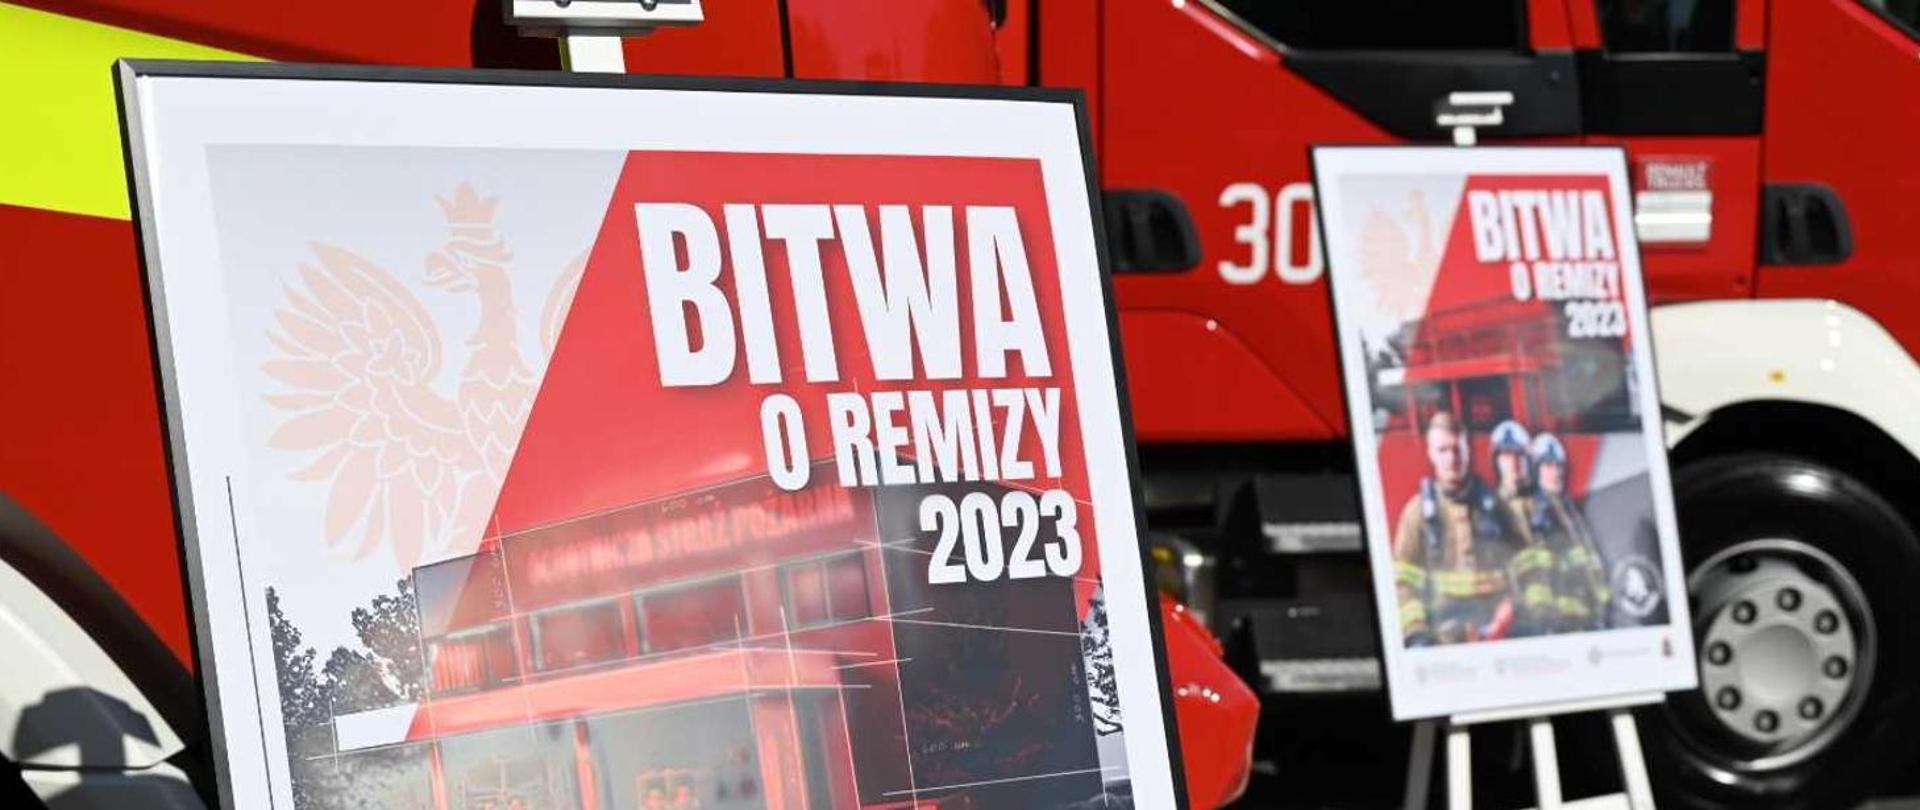 Zdjęcie przedstawia dwa plakaty promujące akcję "Bitwa o Remizy 2023" na tle samochodu ratowniczo-gaśniczego.